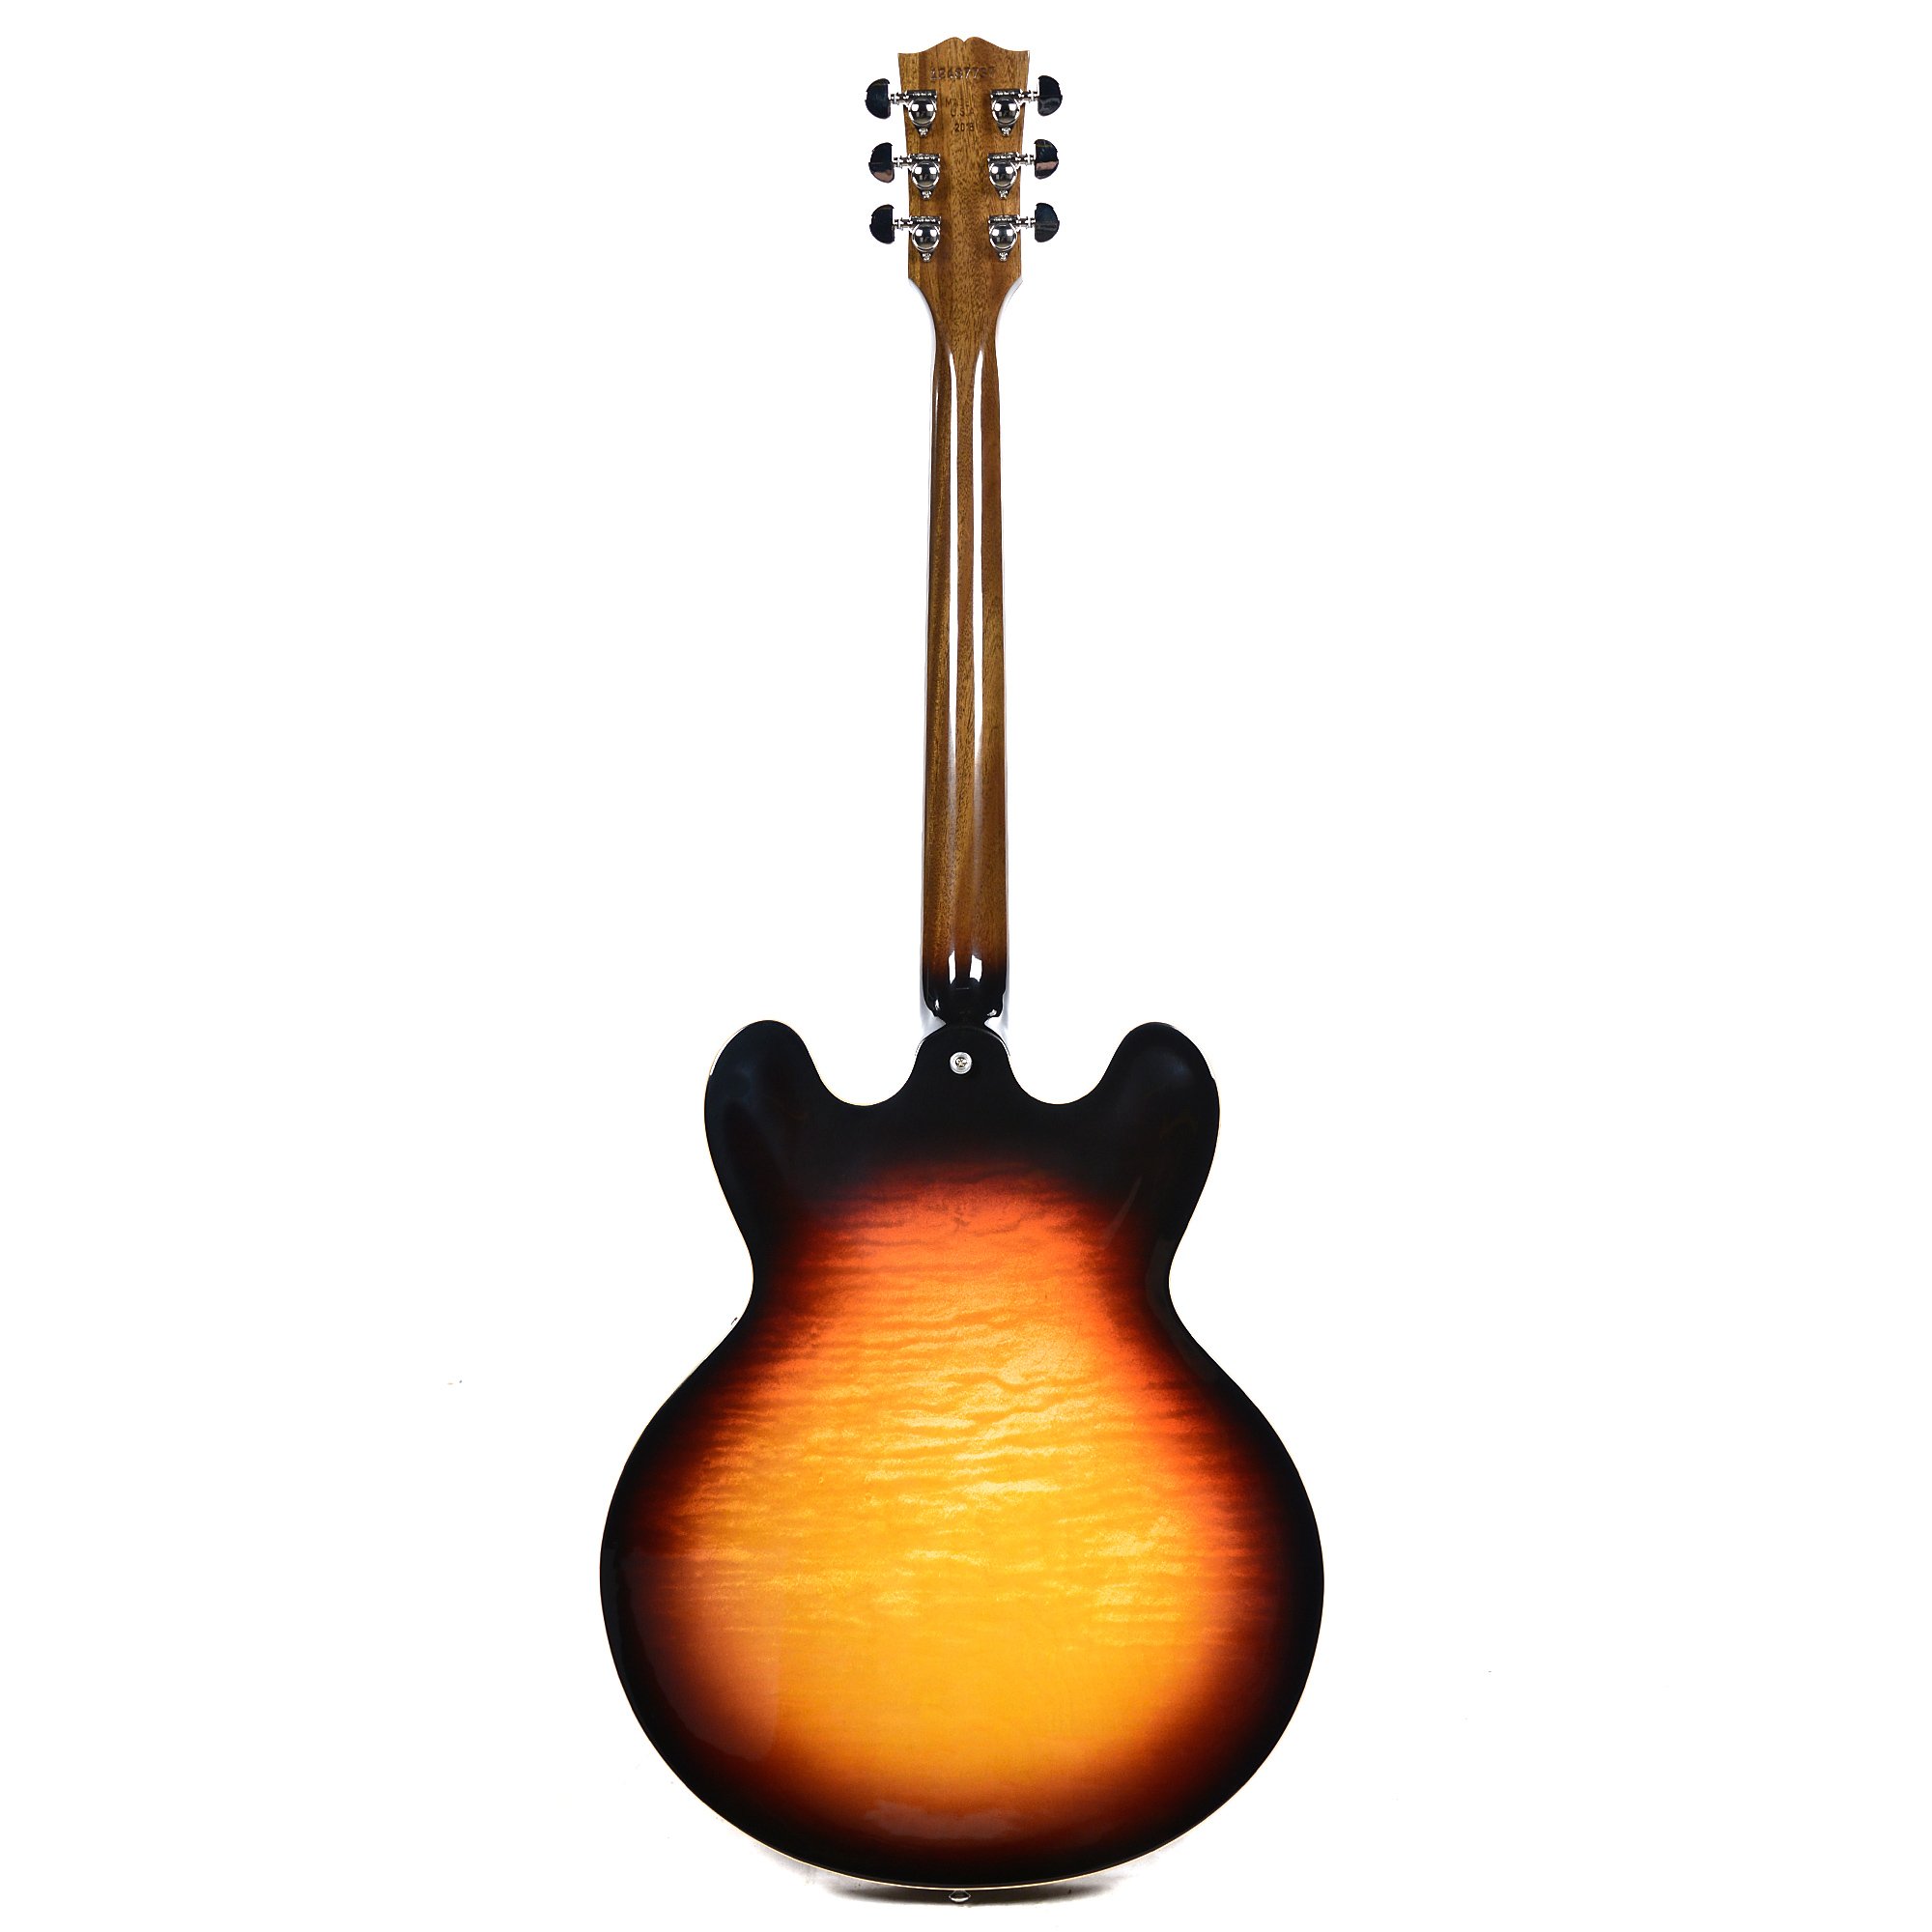 Gibson Es-335 Figured 2018 Ltd - Antique Sunset Burst - Semi hollow elektriche gitaar - Variation 1